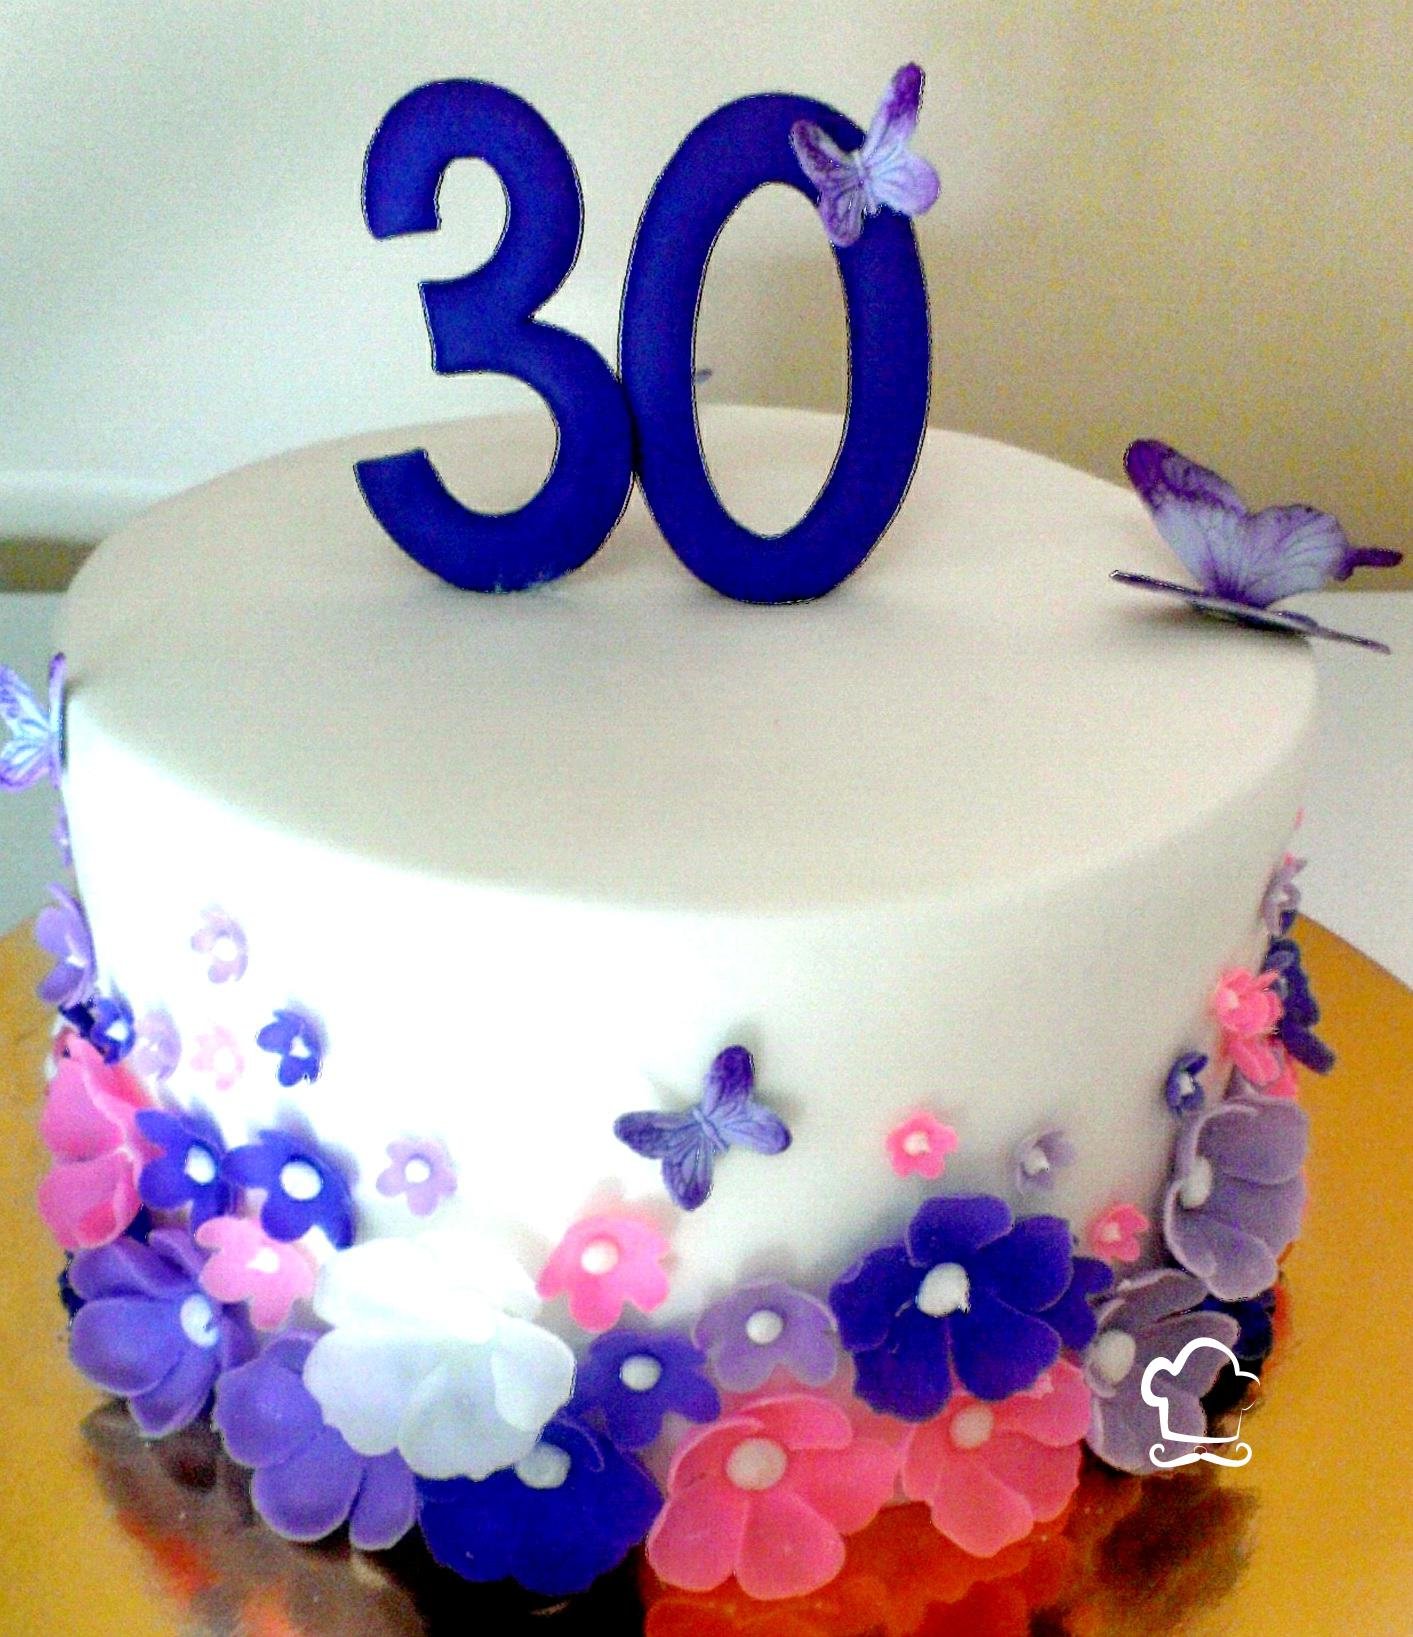 С днем рождения 30 лет женщине красивые. Красивый торт на день рождения 30 лет. Торт на день рождения 30 лет девушке. Торт 30 лет девушке красивый на день рождения. Украшение торта на юбилей 30 лет девушке.